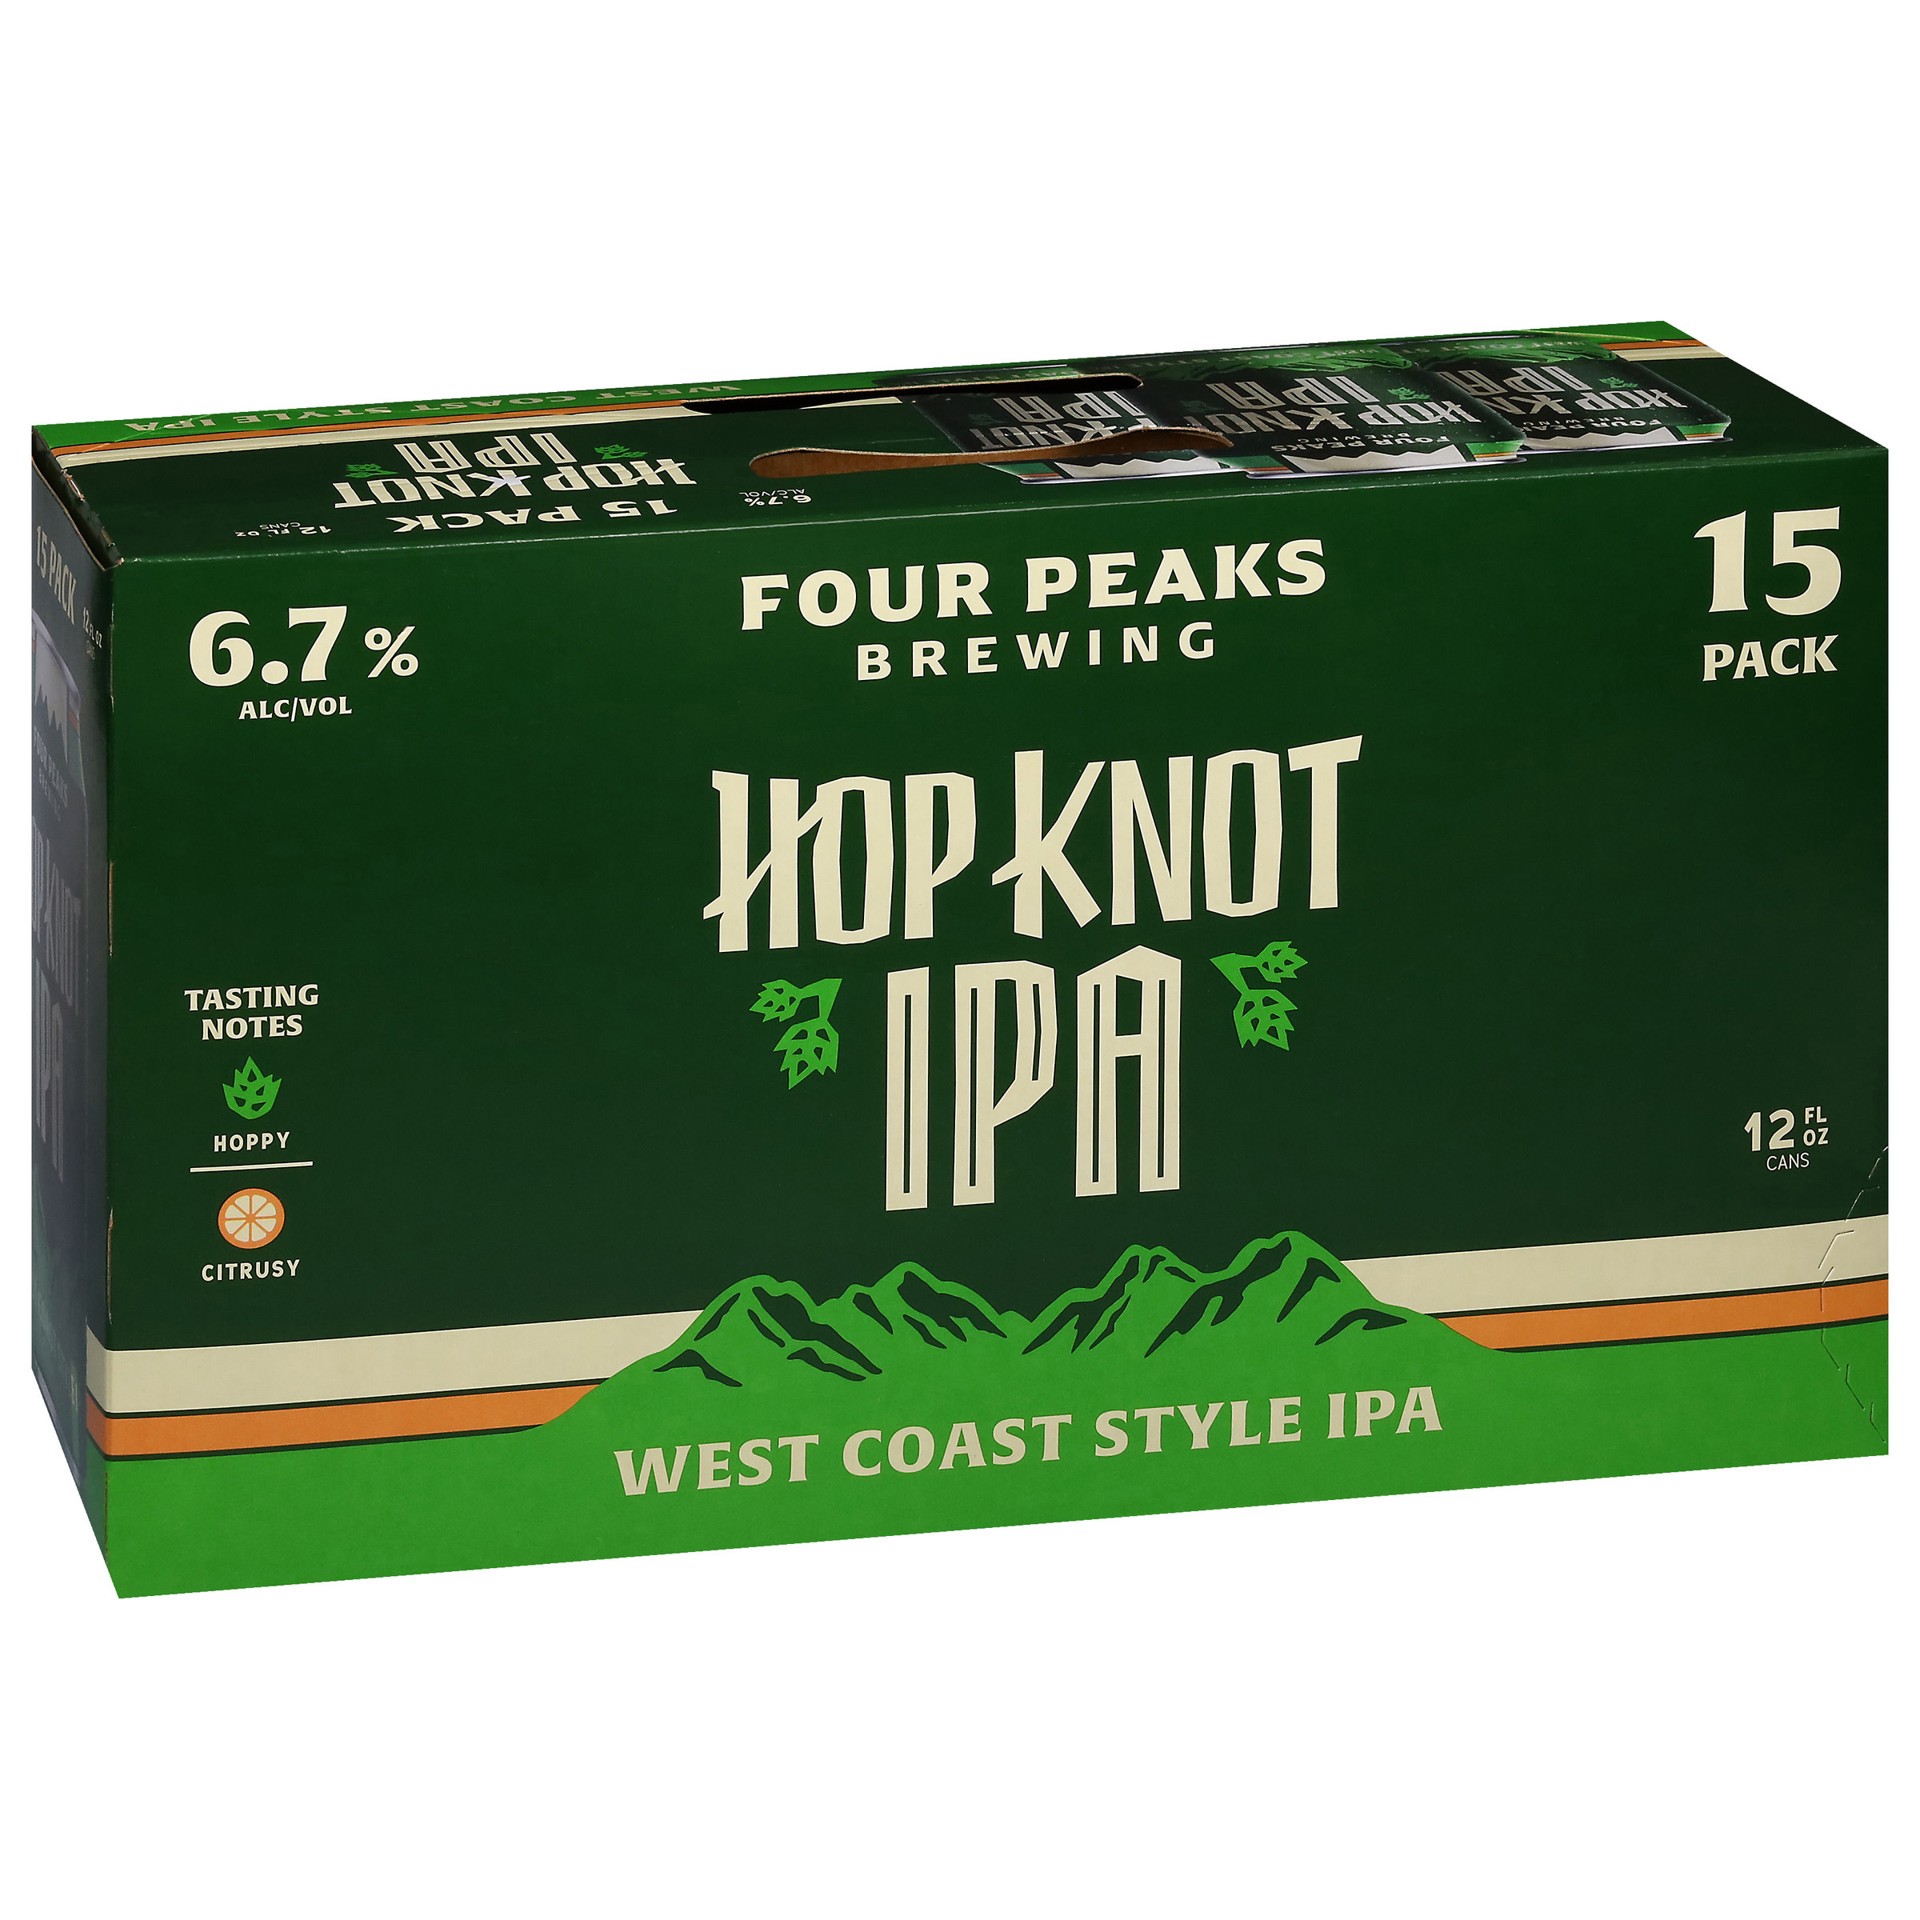 slide 1 of 8, Four Peaks Brewing Four Peaks Hop Knot IPA Craft Beer, 15 Pack Beer, 12 FL OZ Cans, 15 ct